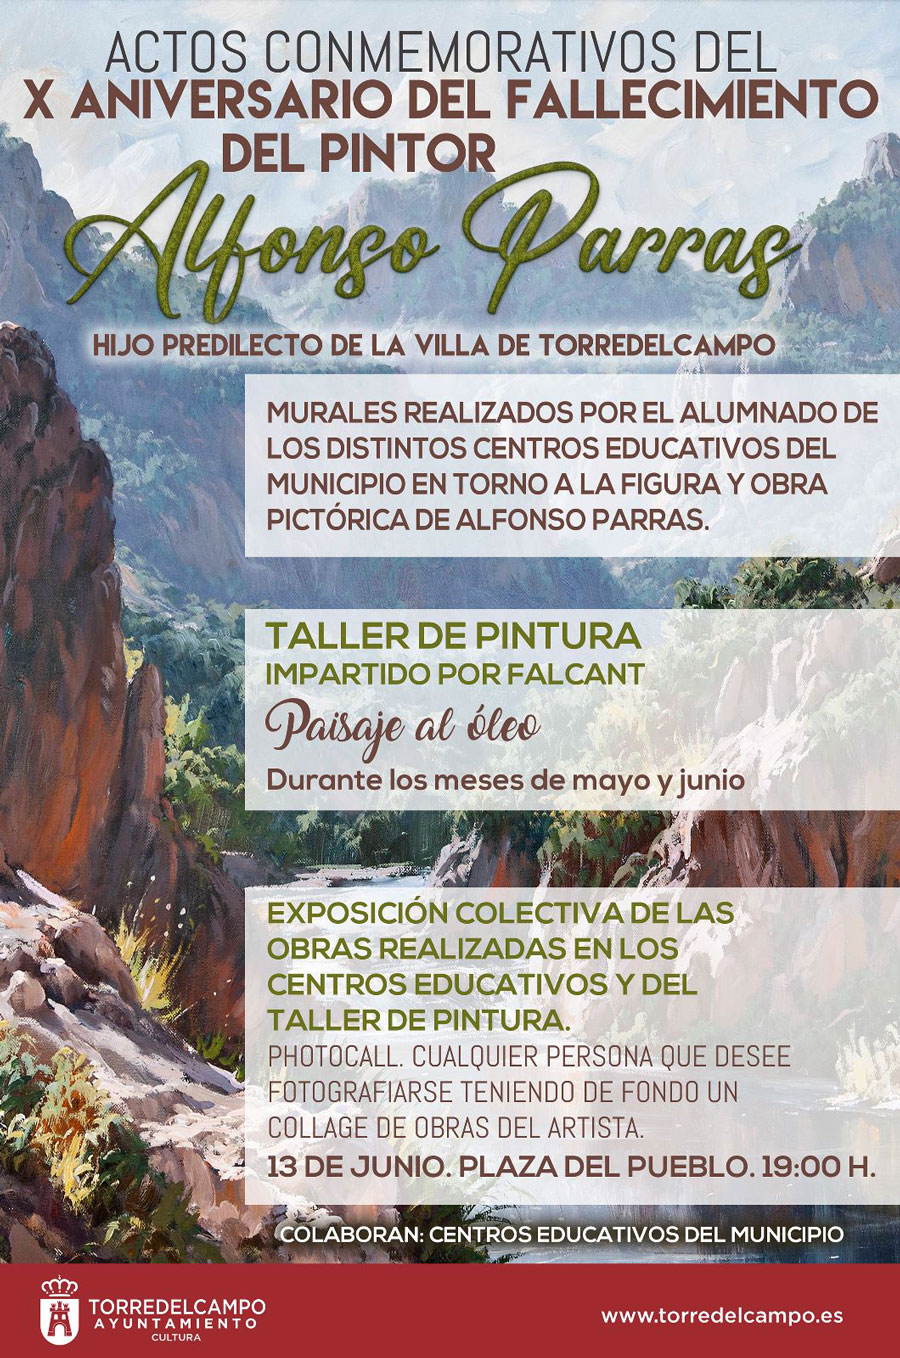 Actos conmemorativos - X Aniversario del fallecimiento del pintor Alfonso Parras